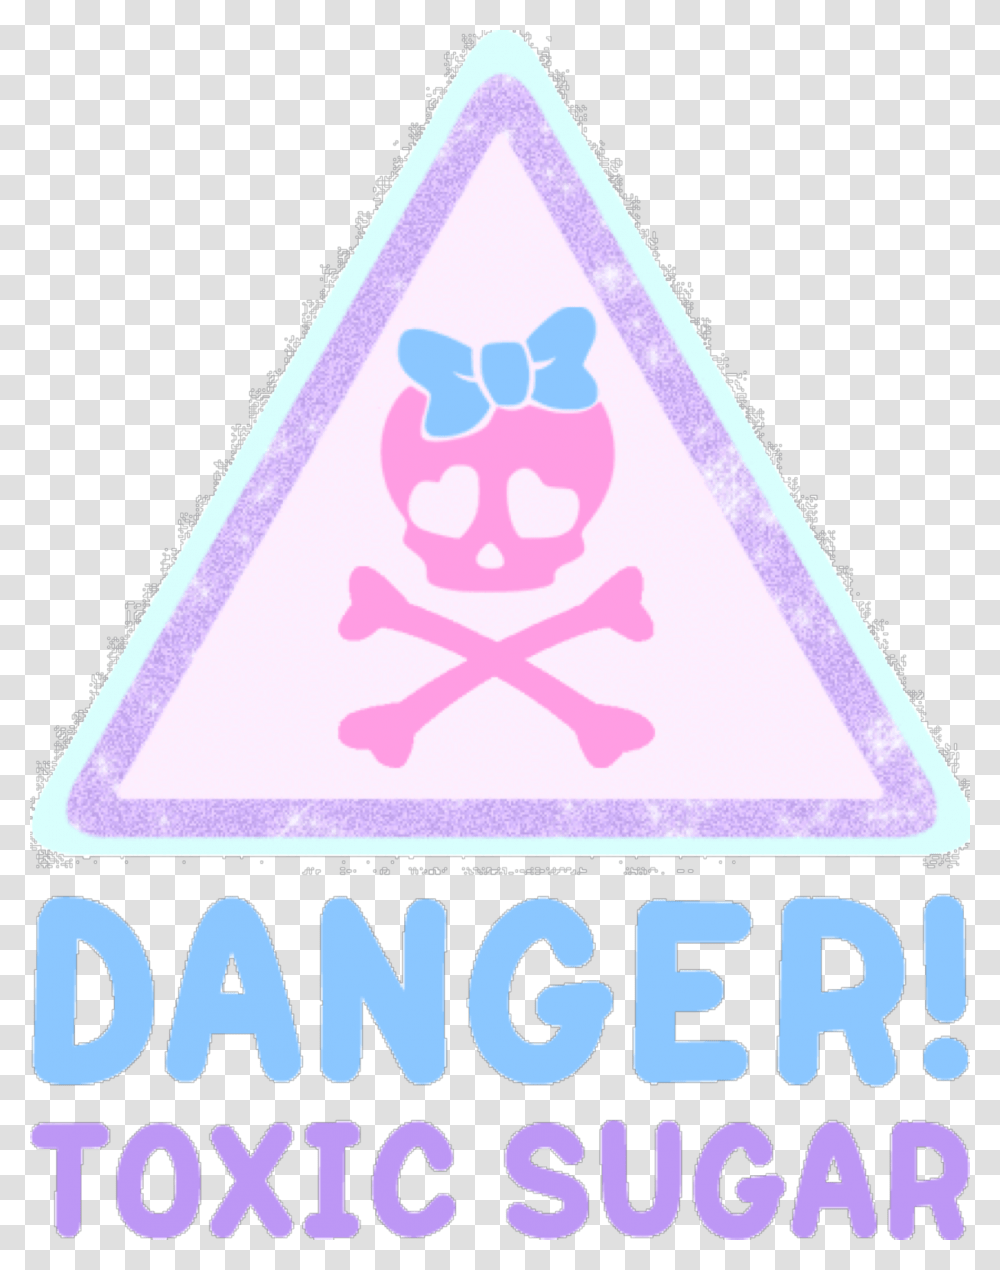 Pastel Pastelgoth Pastelgrunge Danger Toxic Sugar Kawaii Pastel Goth, Triangle Transparent Png